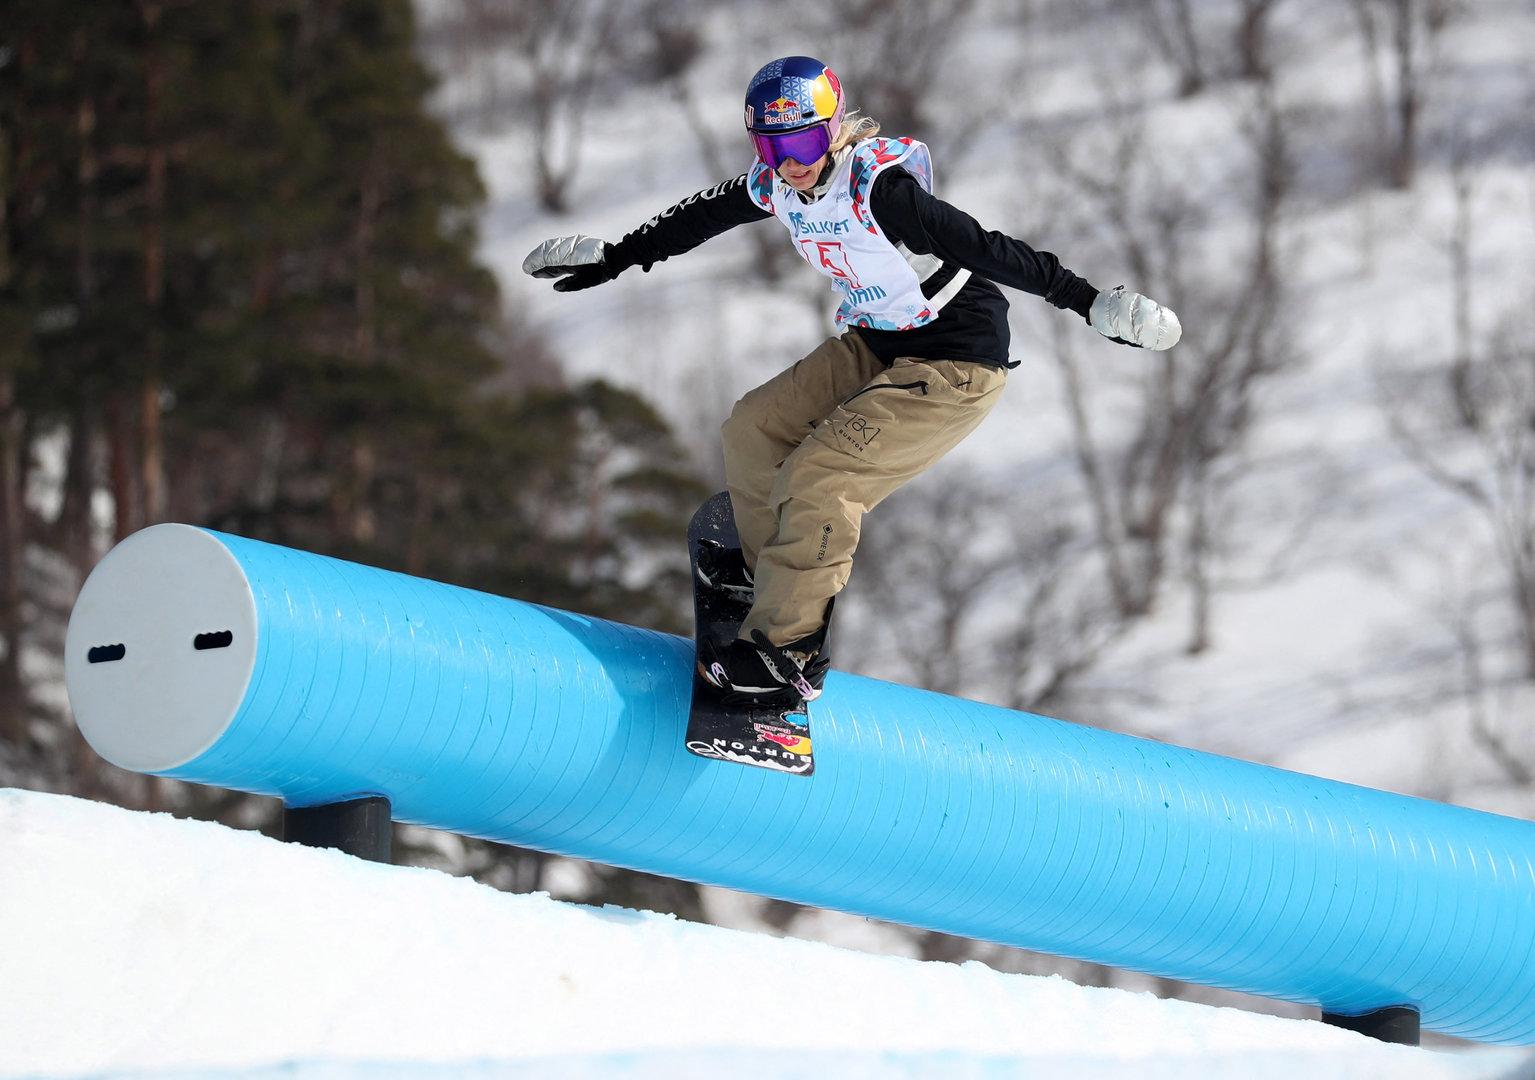 Snowboard-Star Anna Gasser verpasst WM-Medaille im Slopestyle